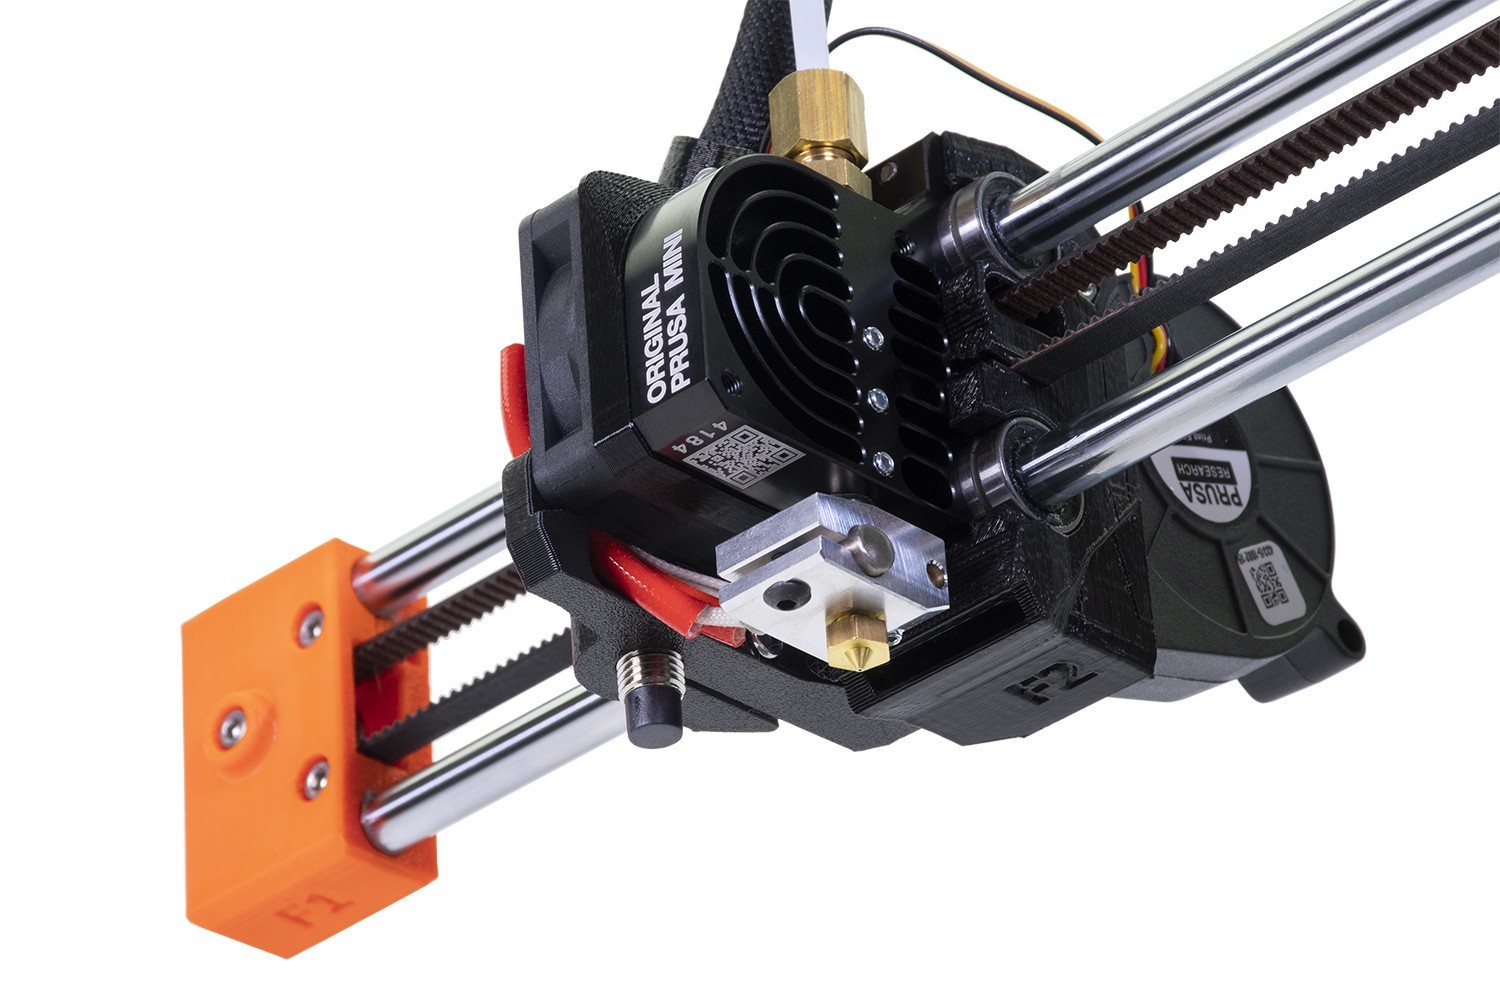 Original Prusa MINI+ kit | Original Prusa 3D printers directly 